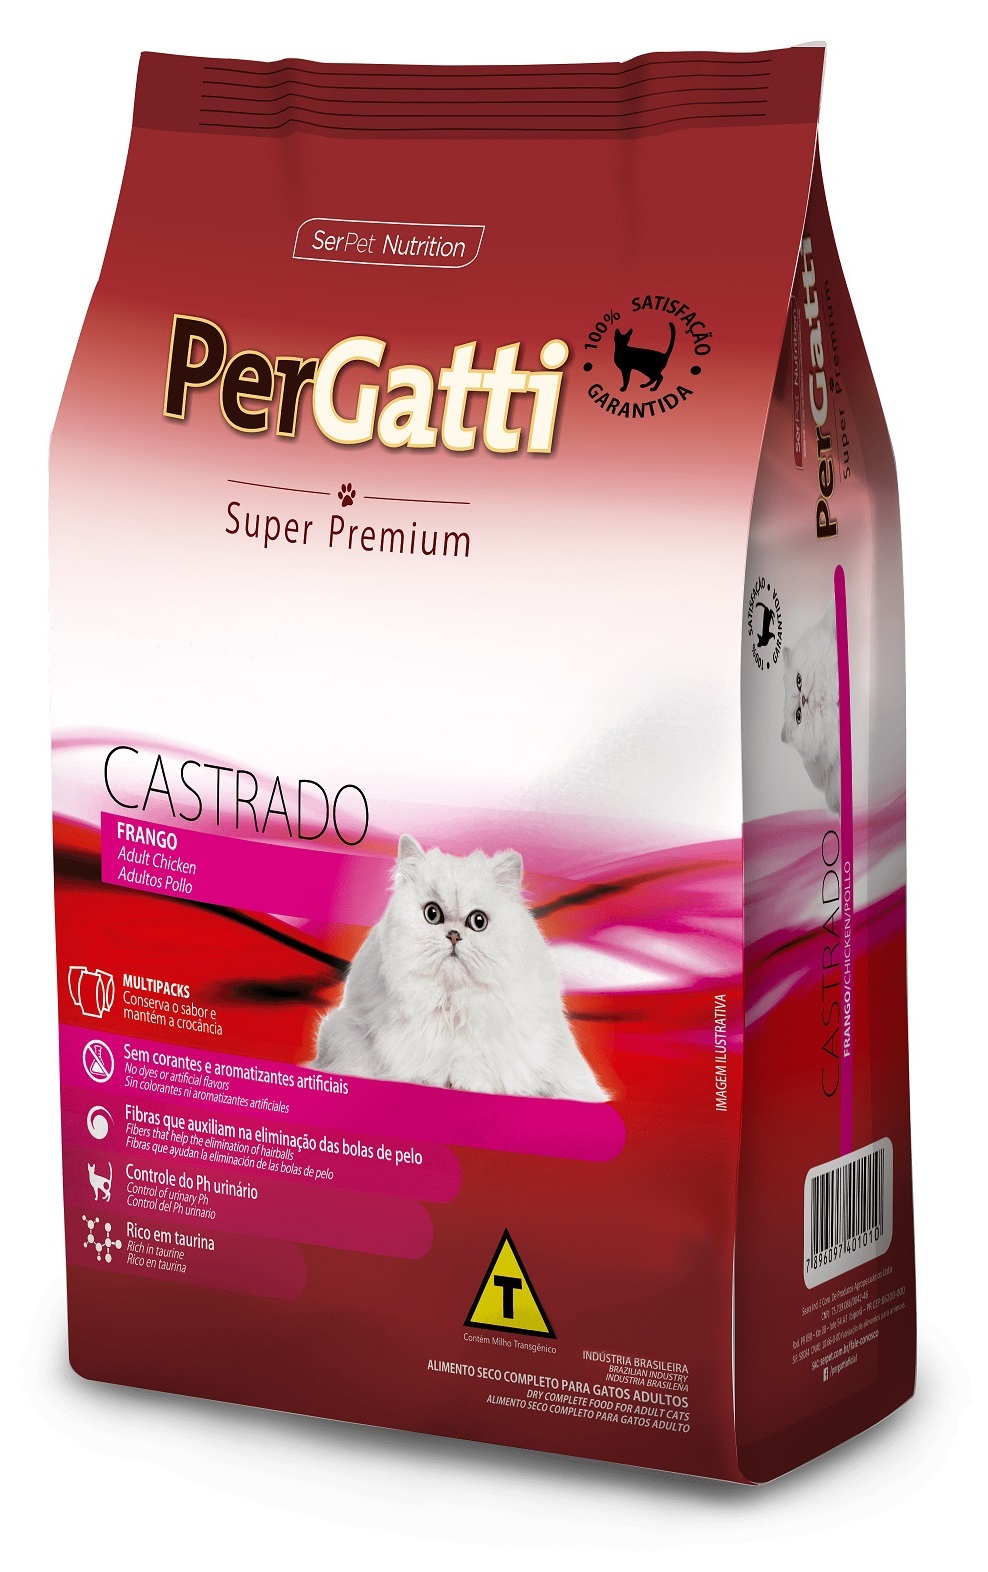 Ração Pergatti Super Premium Castrado Frango 10.1Kg